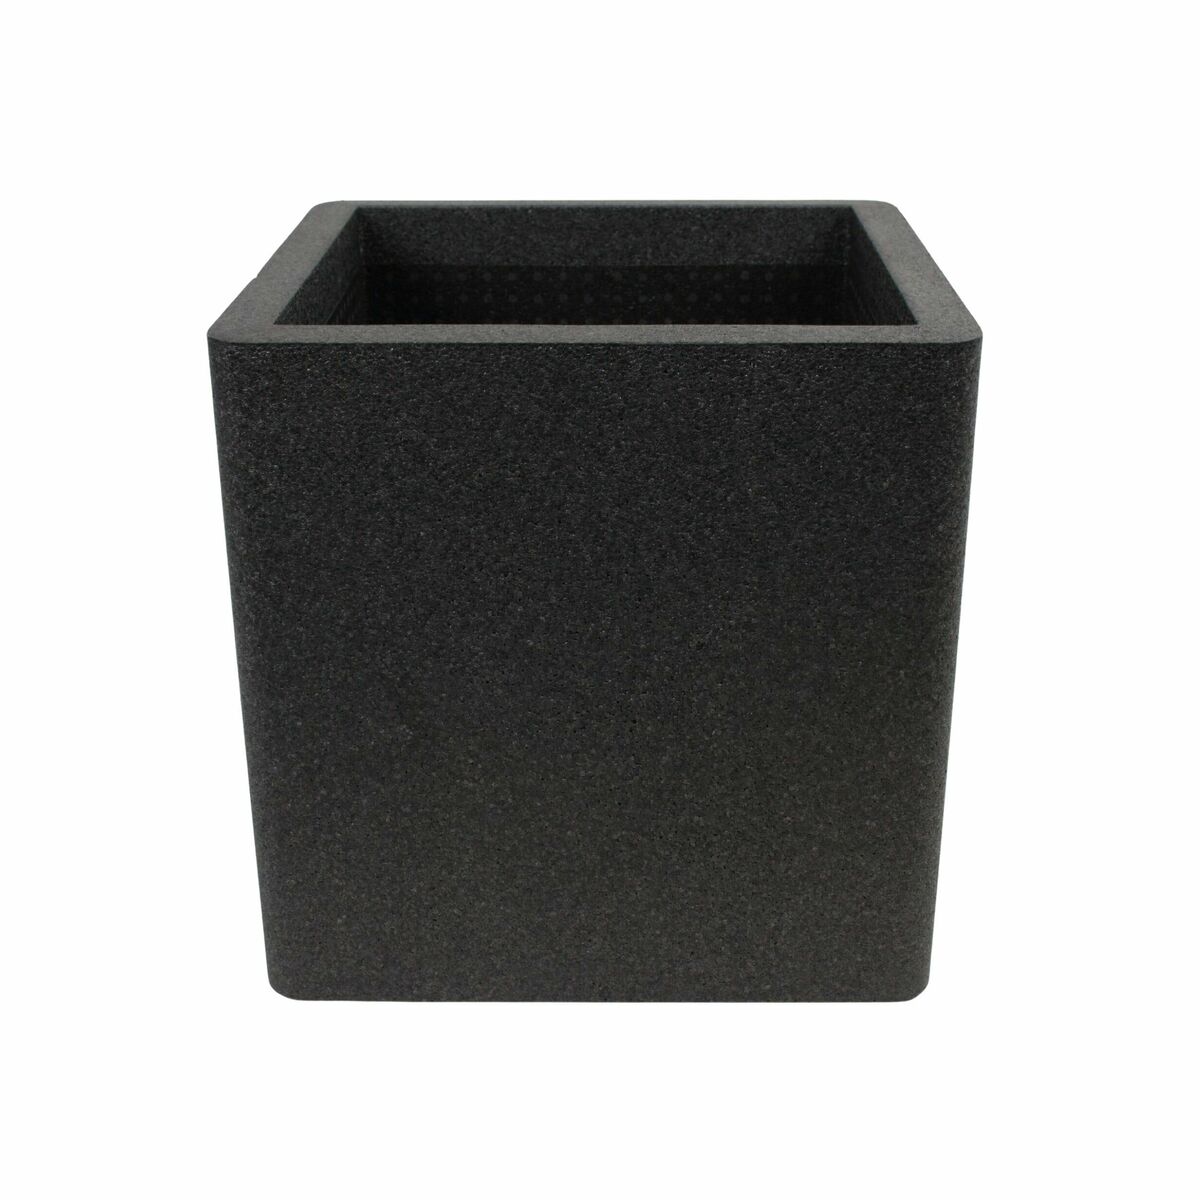 Donica plastikowa IQ Cube 39x39 cm czarna Cermax